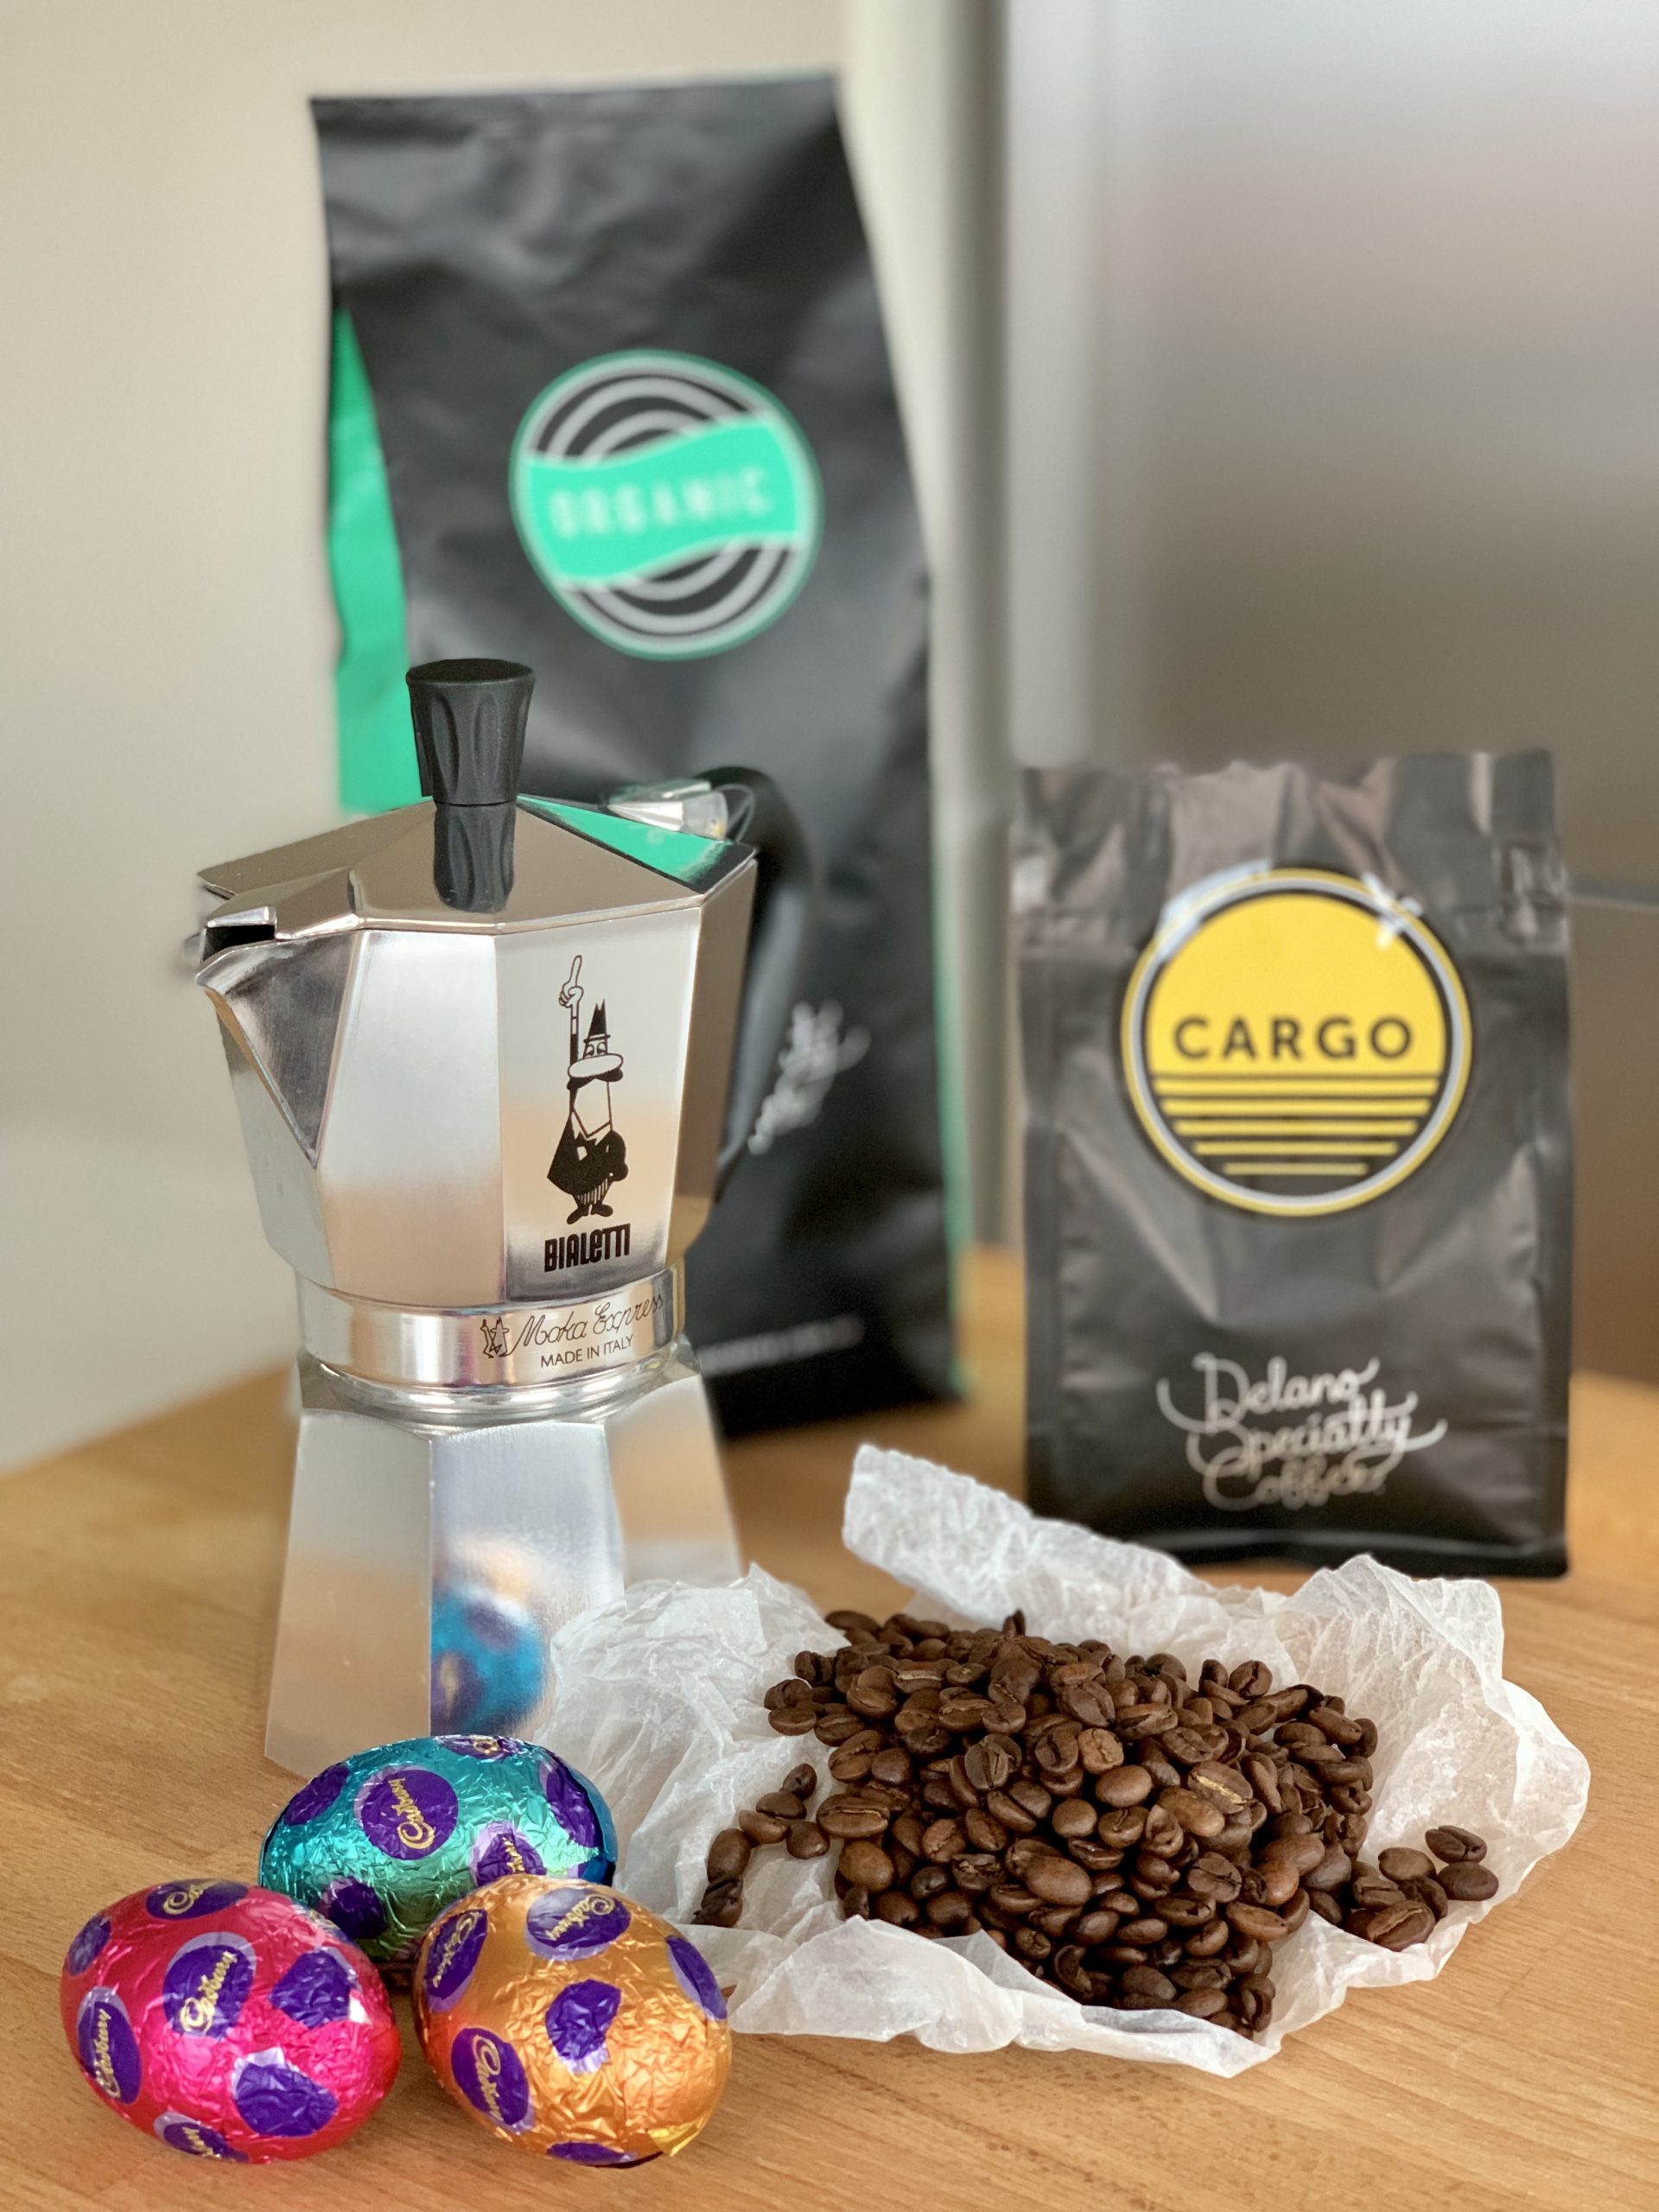 POD Emporium & Espresso - Delano Coffee - Support your local community through COVID-19 - Giddy Guest